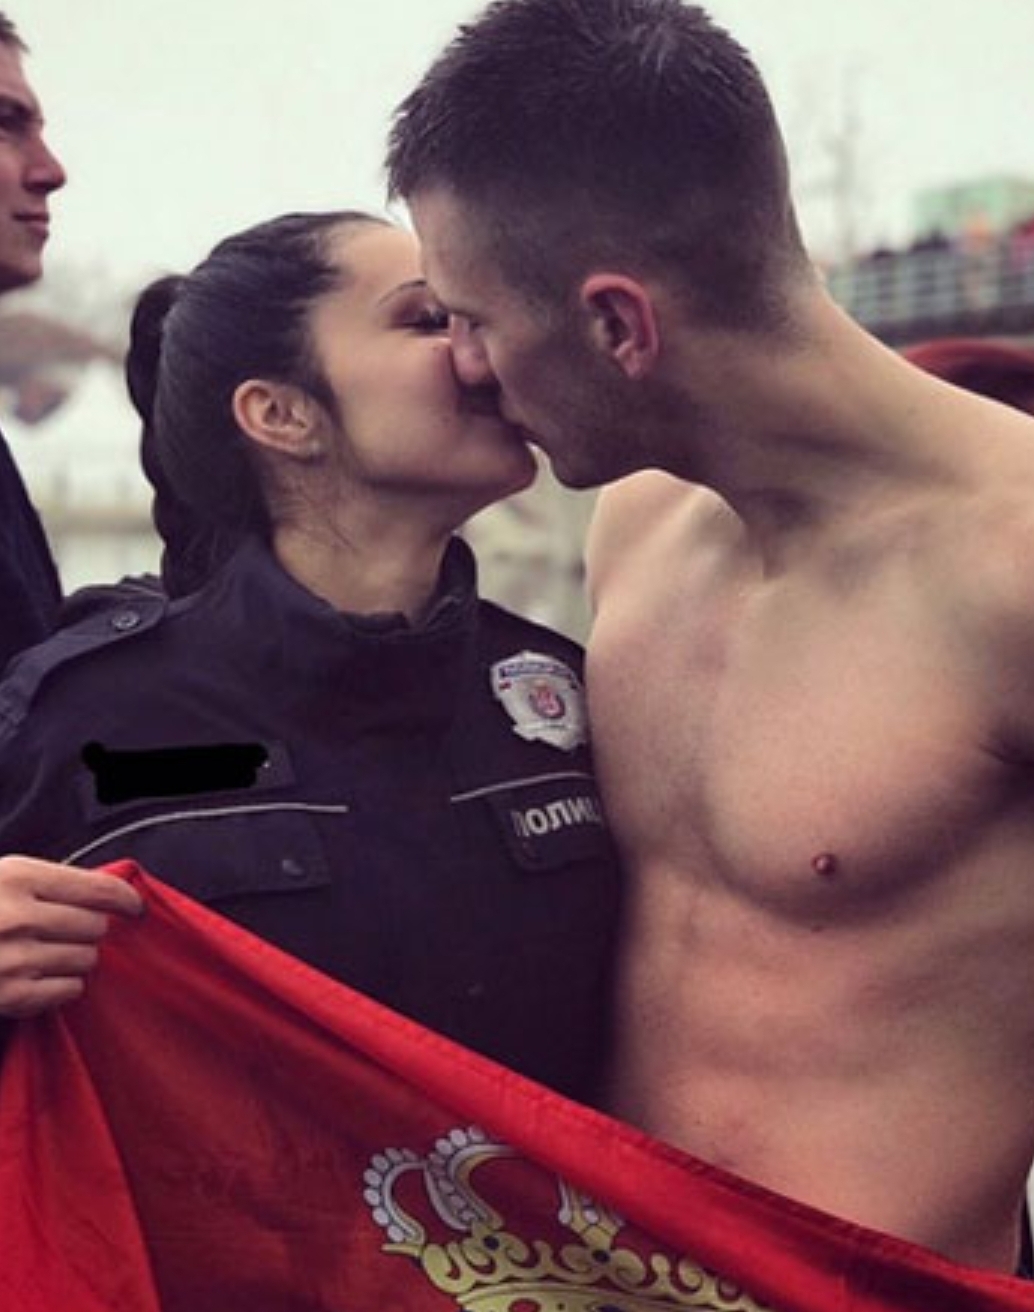 Најљепша слика дана: Лијепа полицајка у загрљају пливача за Часни крст, а у рукама развијена застава Србије (ФОТО)